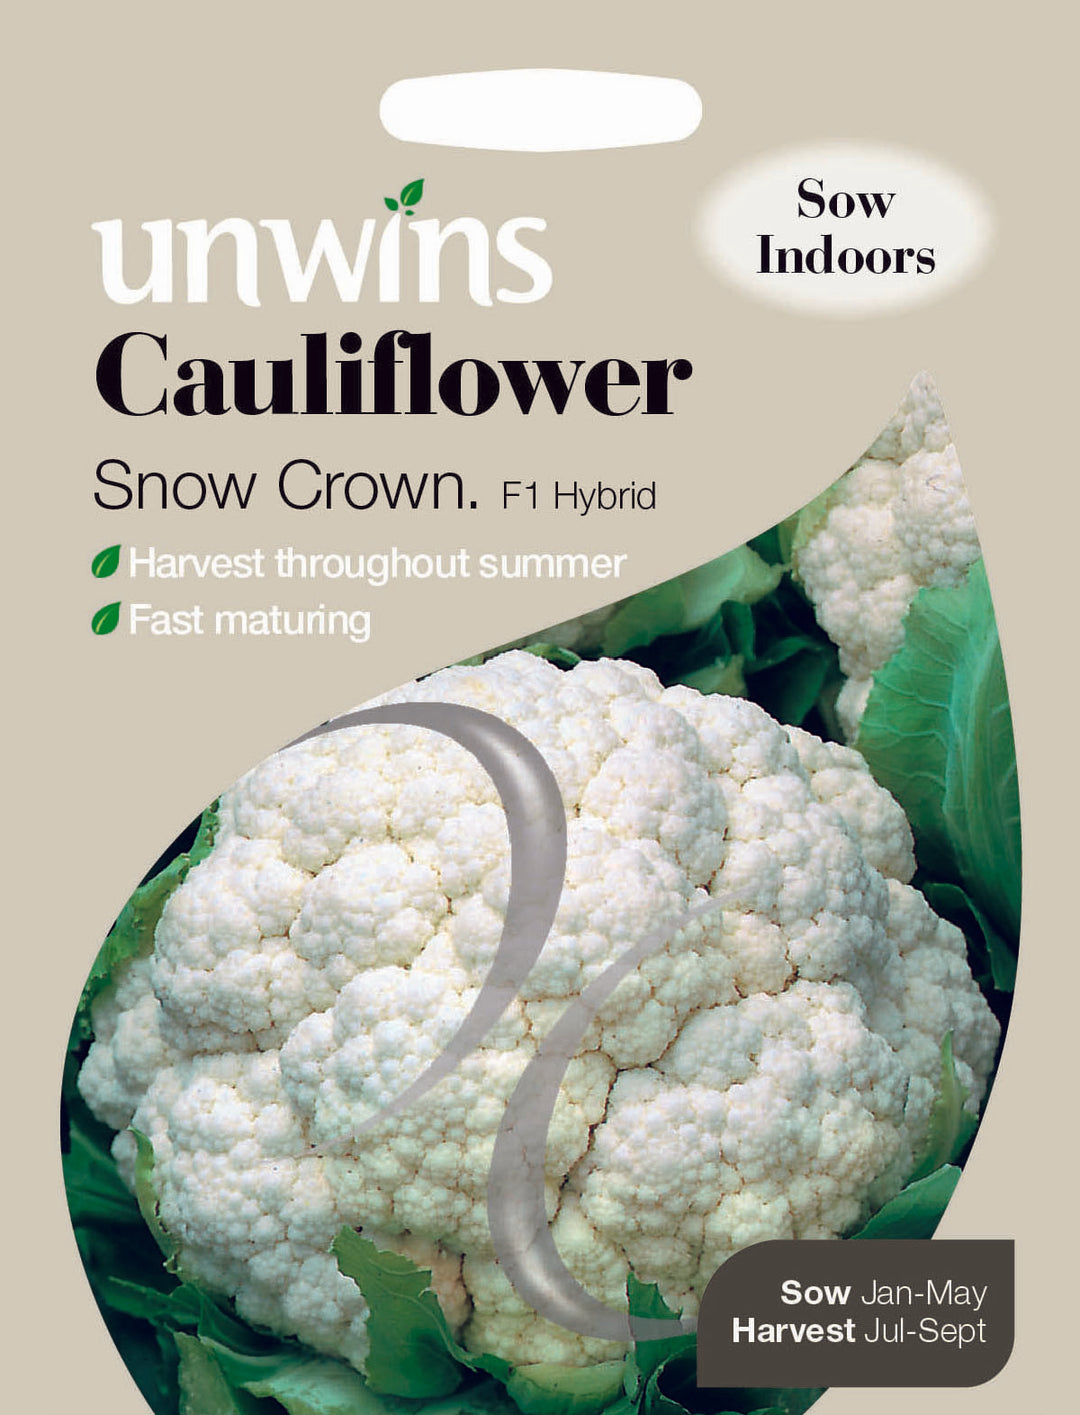 Cauliflower Snow Crown F1